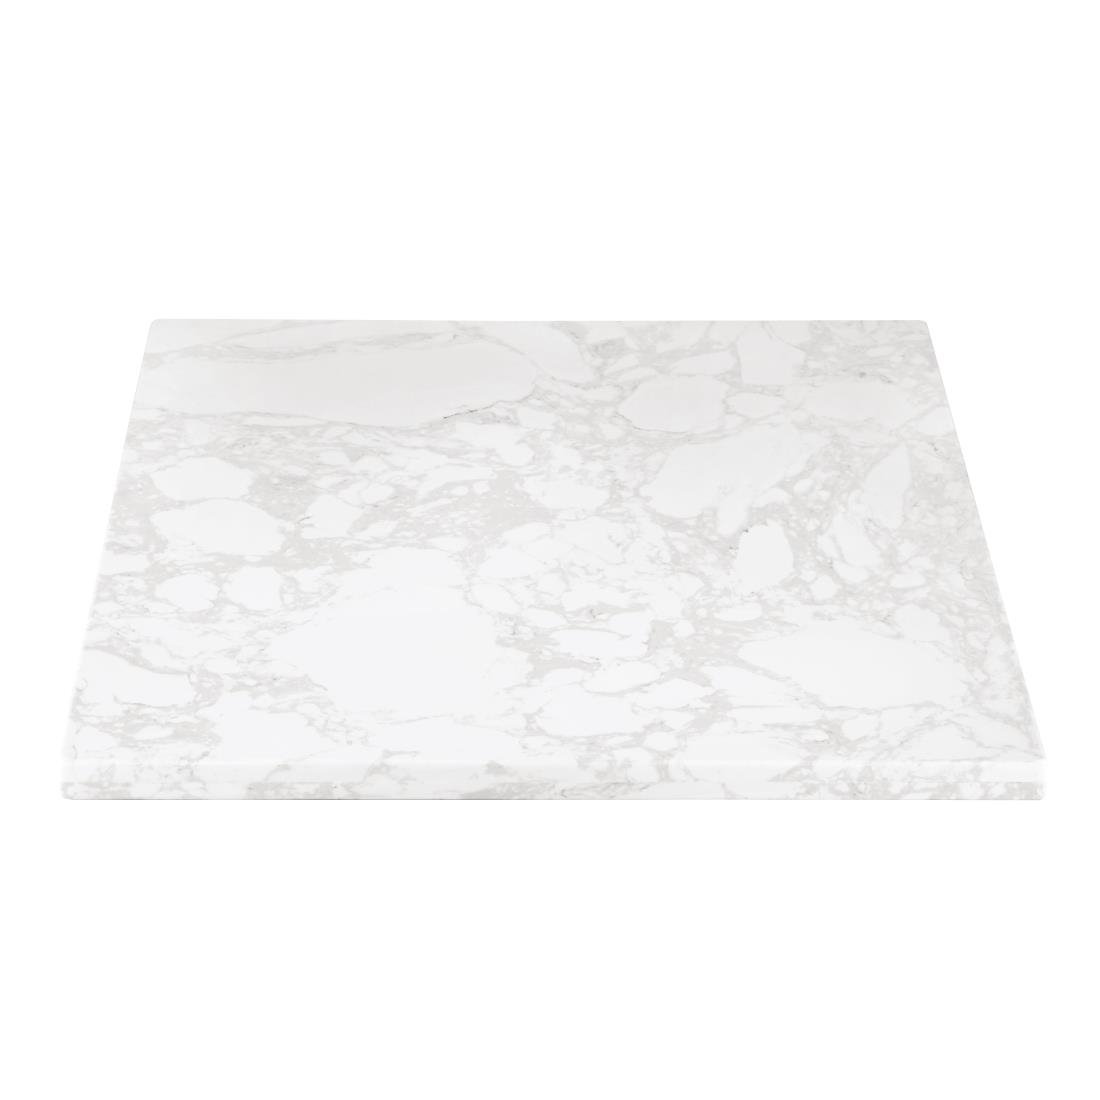 Bolero Quadratische Tischplatte mit Marmoreffekt Weiß 600mm